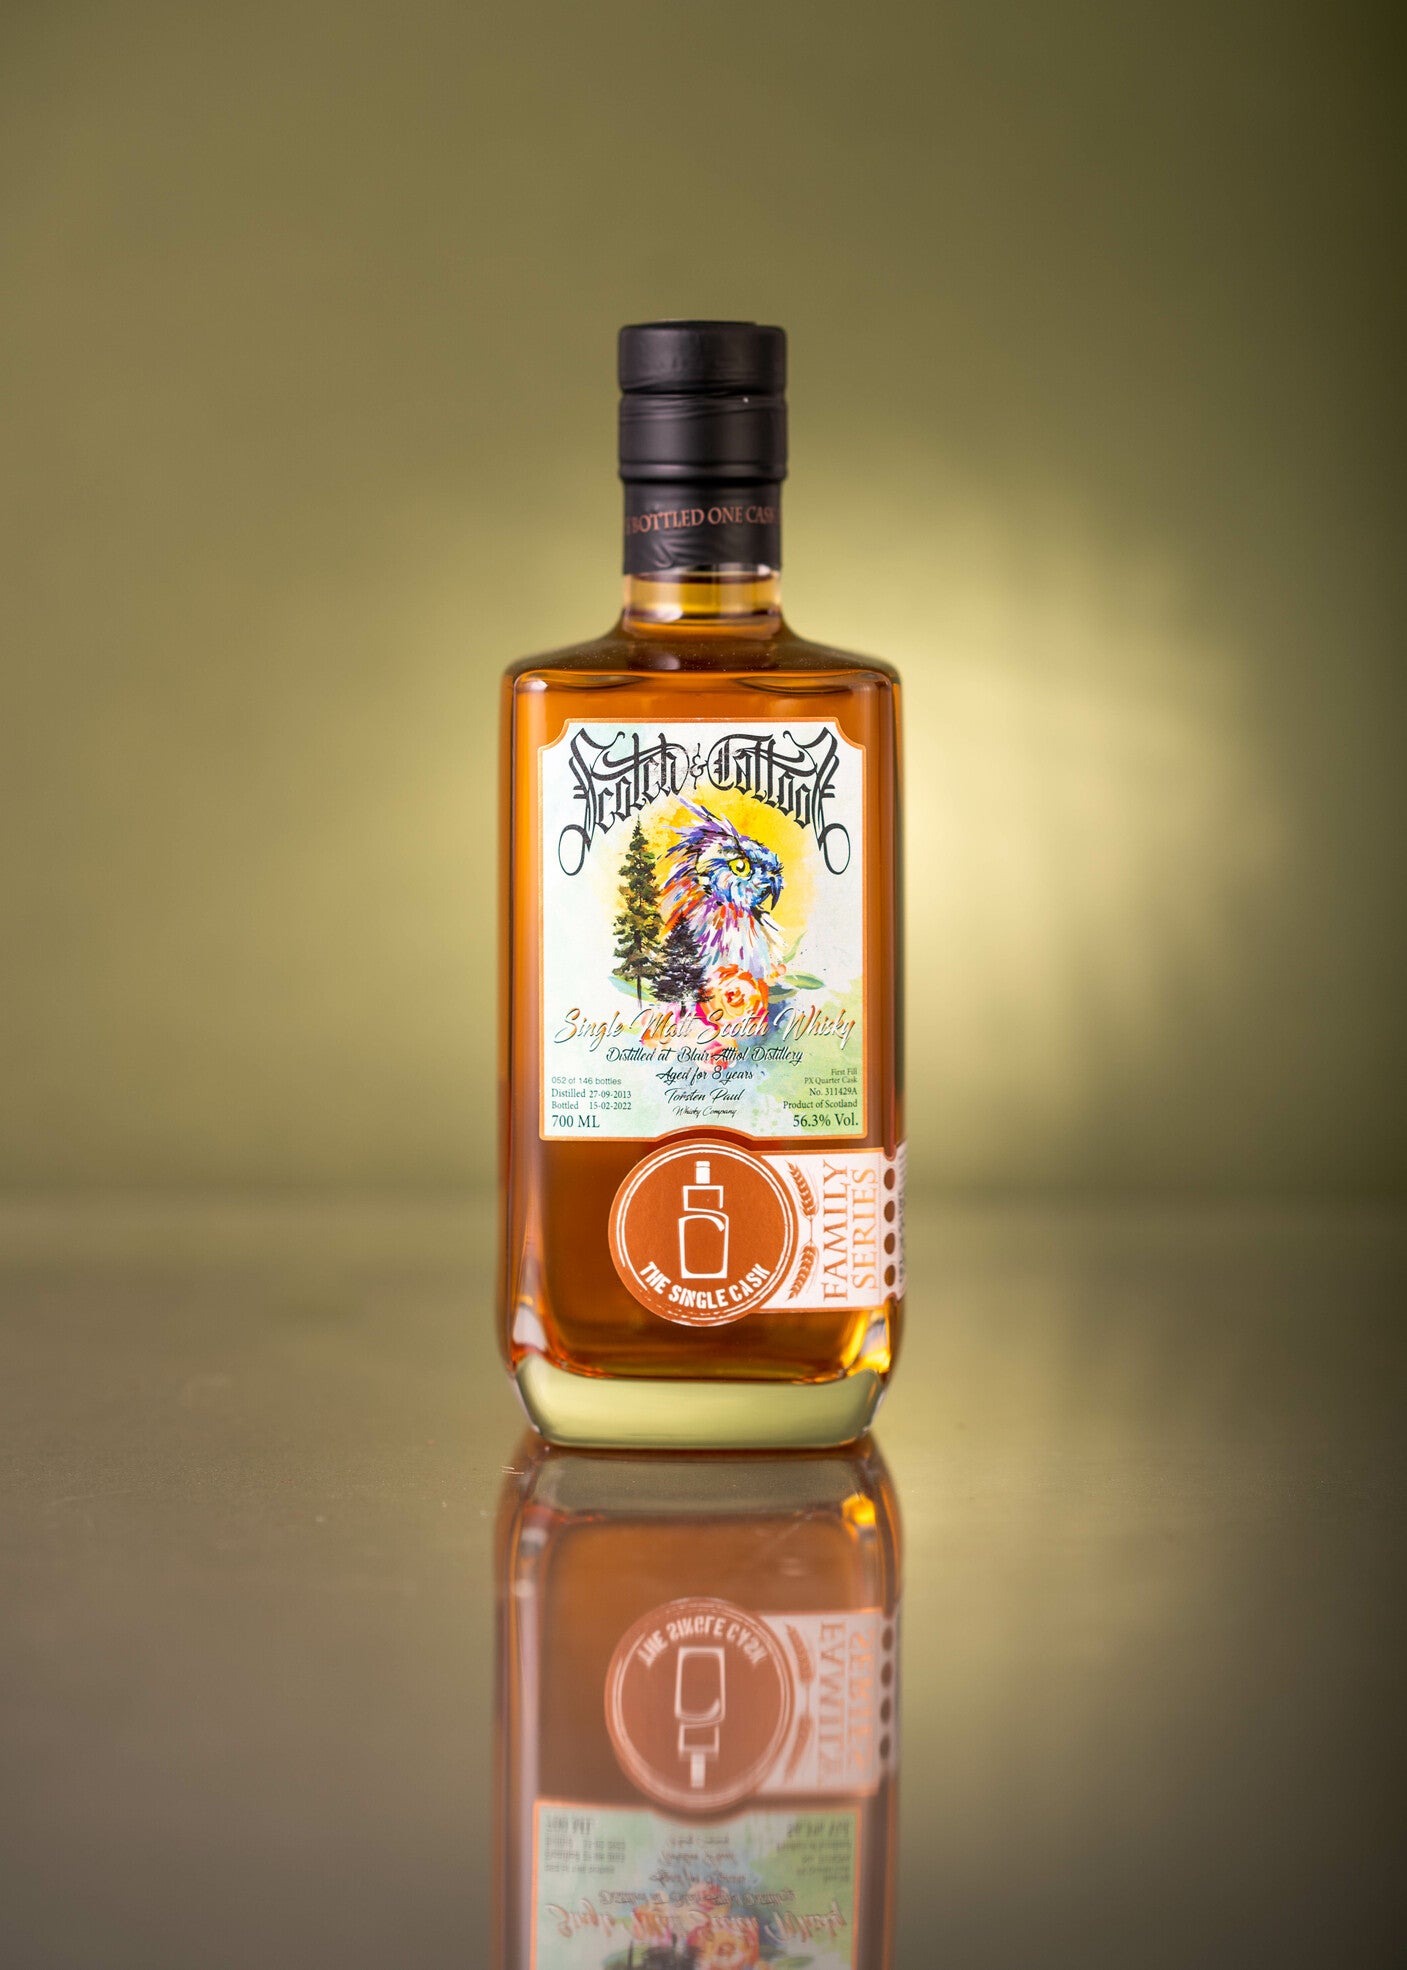 Blair Athol single cask scotch whisky